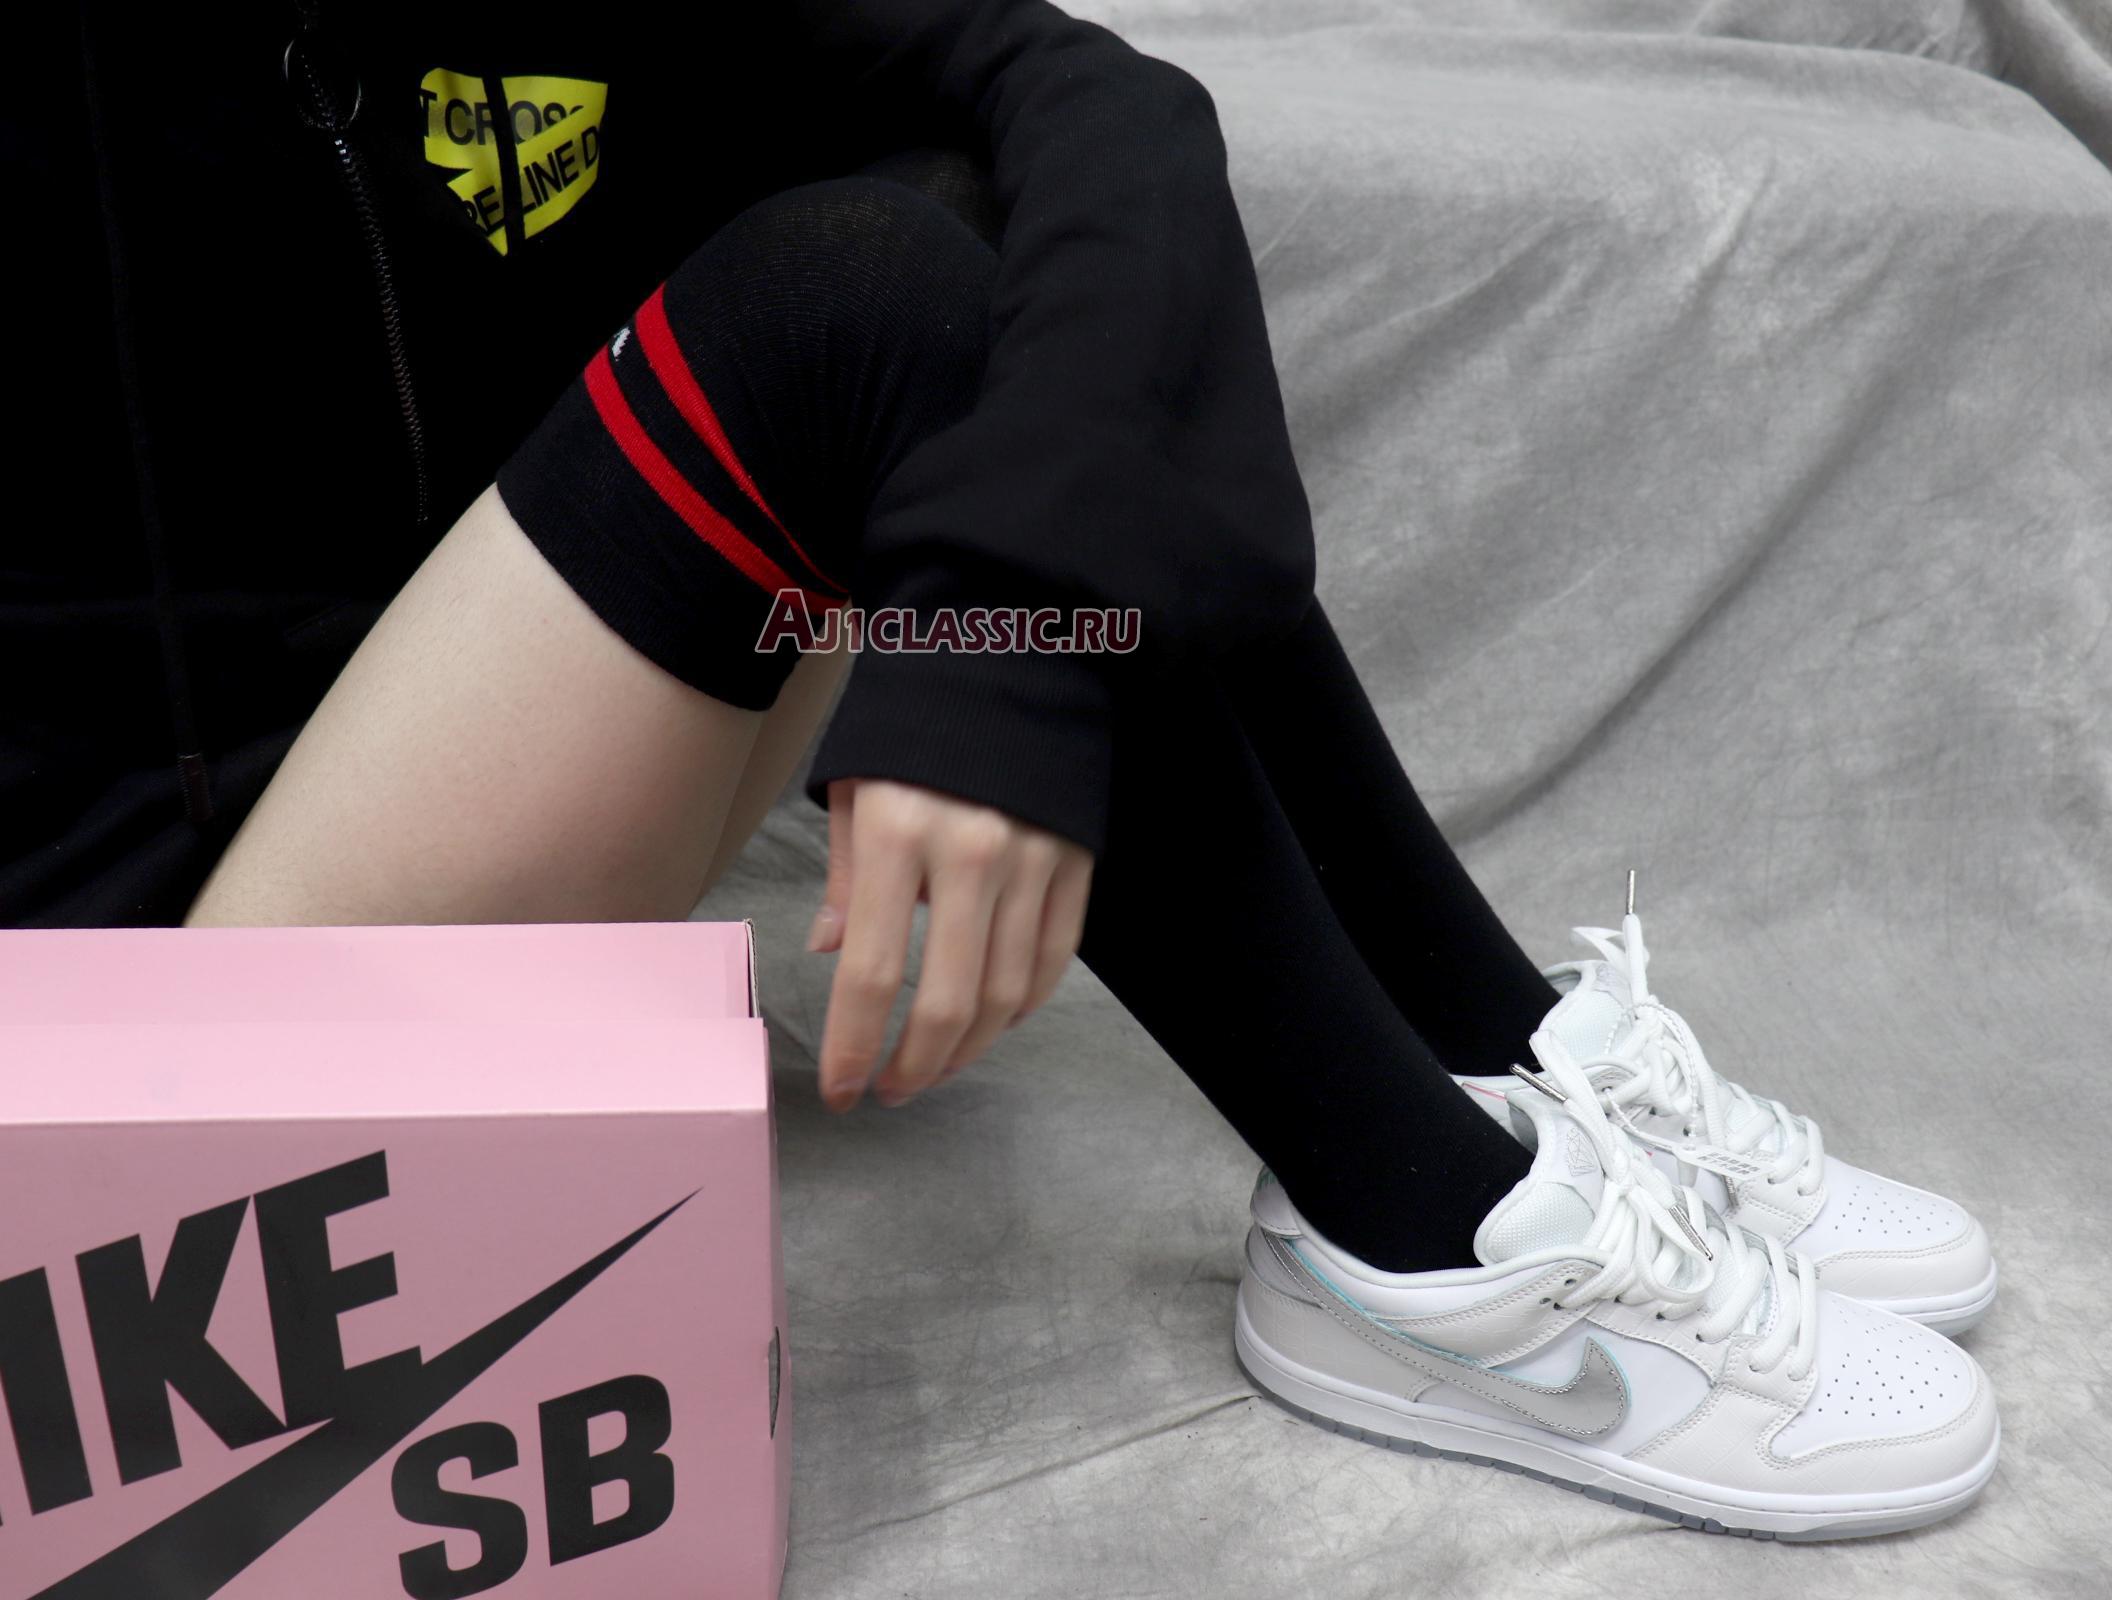 Nike Diamond Supply Co. x Dunk Low Pro SB White Diamond BV1310-100 White/Chrome-White Sneakers